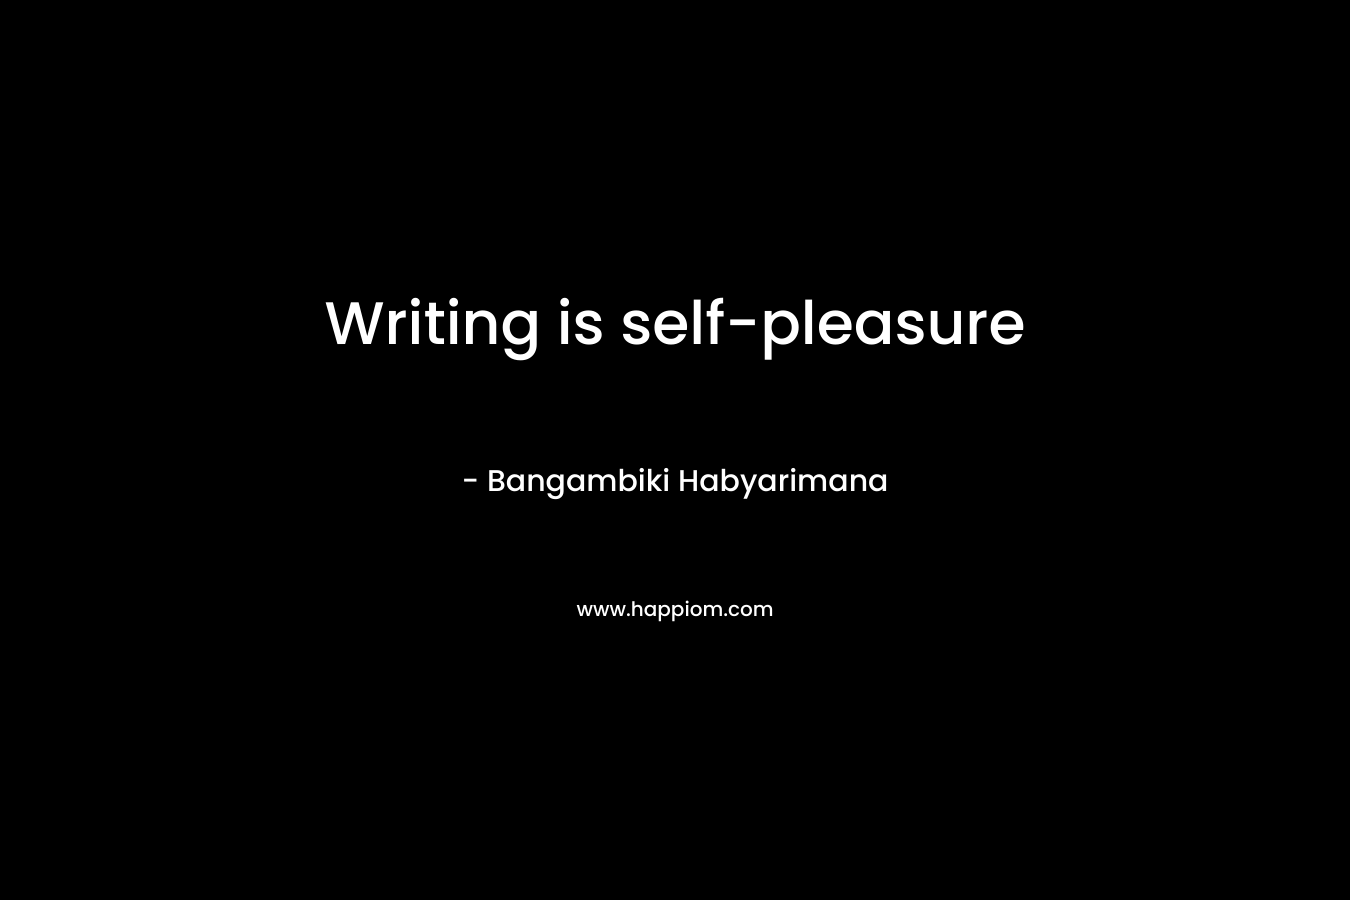 Writing is self-pleasure